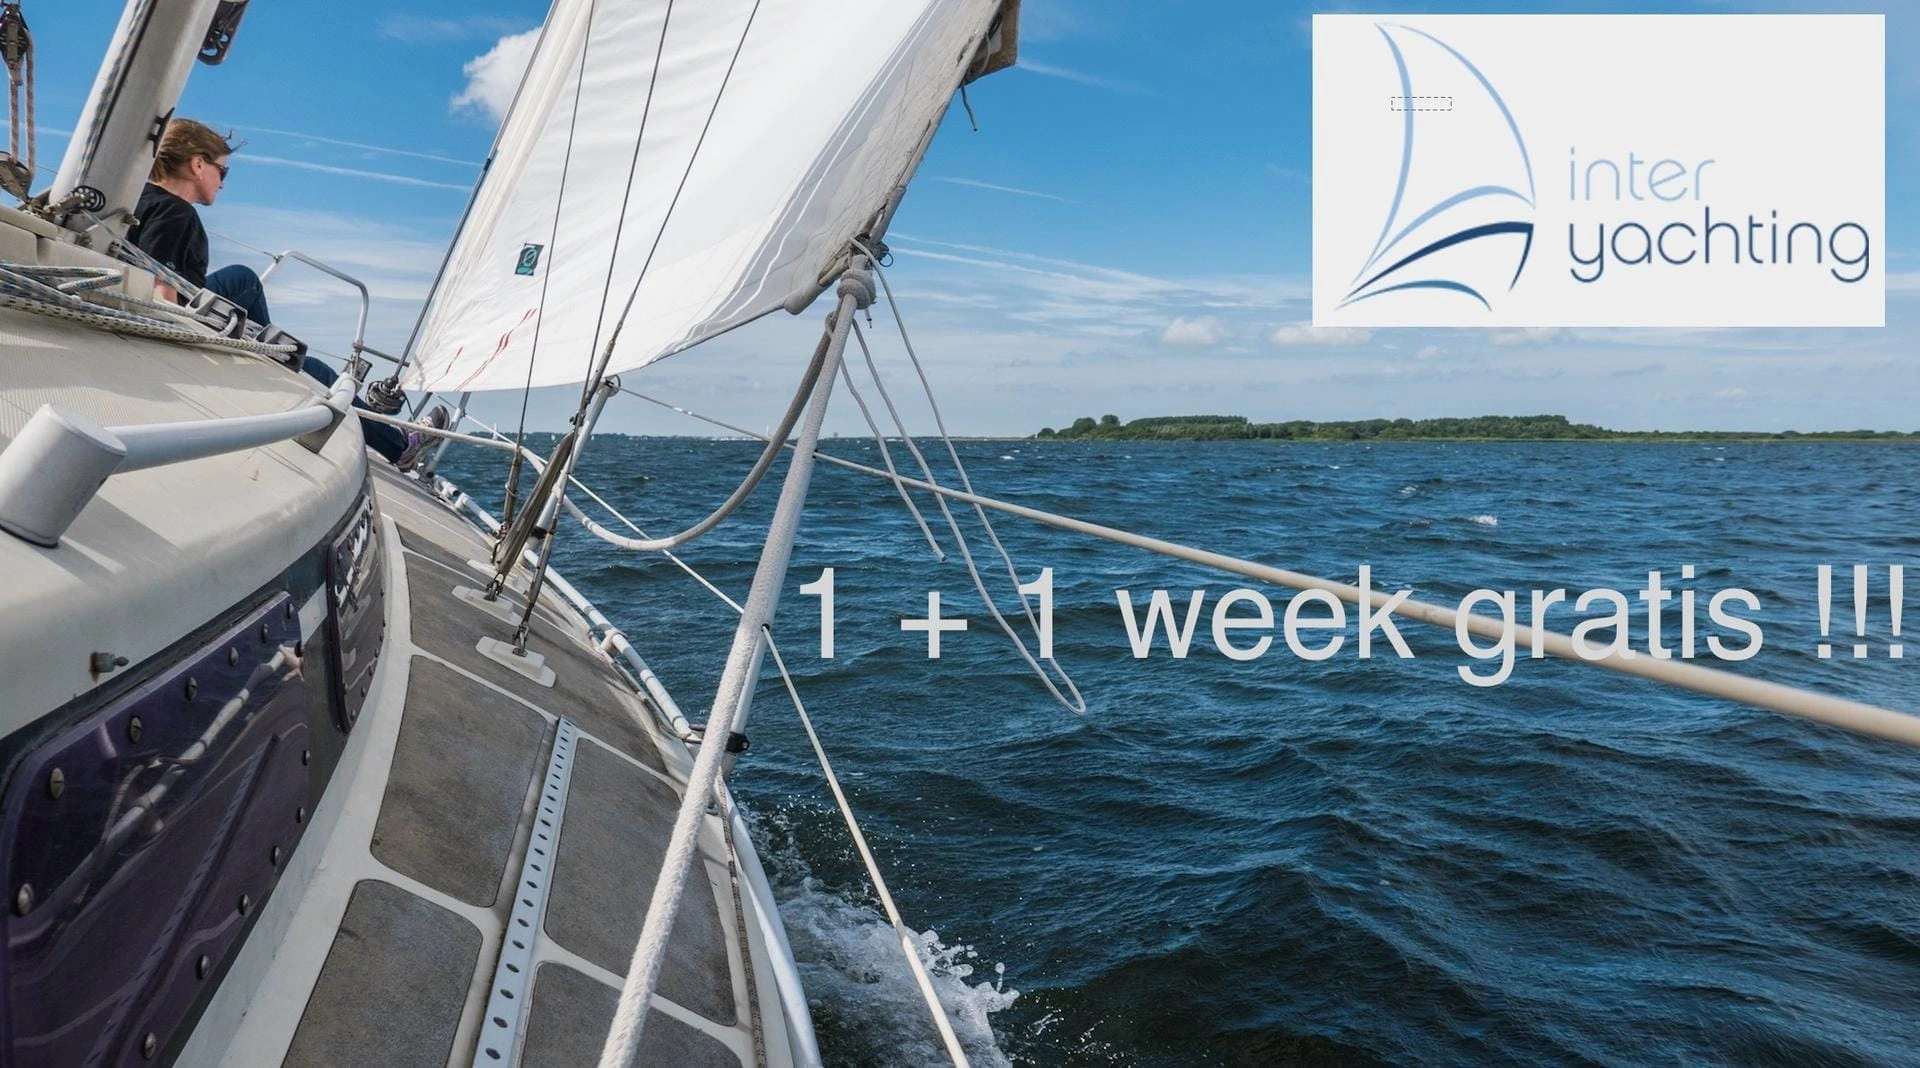 Oferta 1+1 week gratis z Inter Yachting – czy warto ?